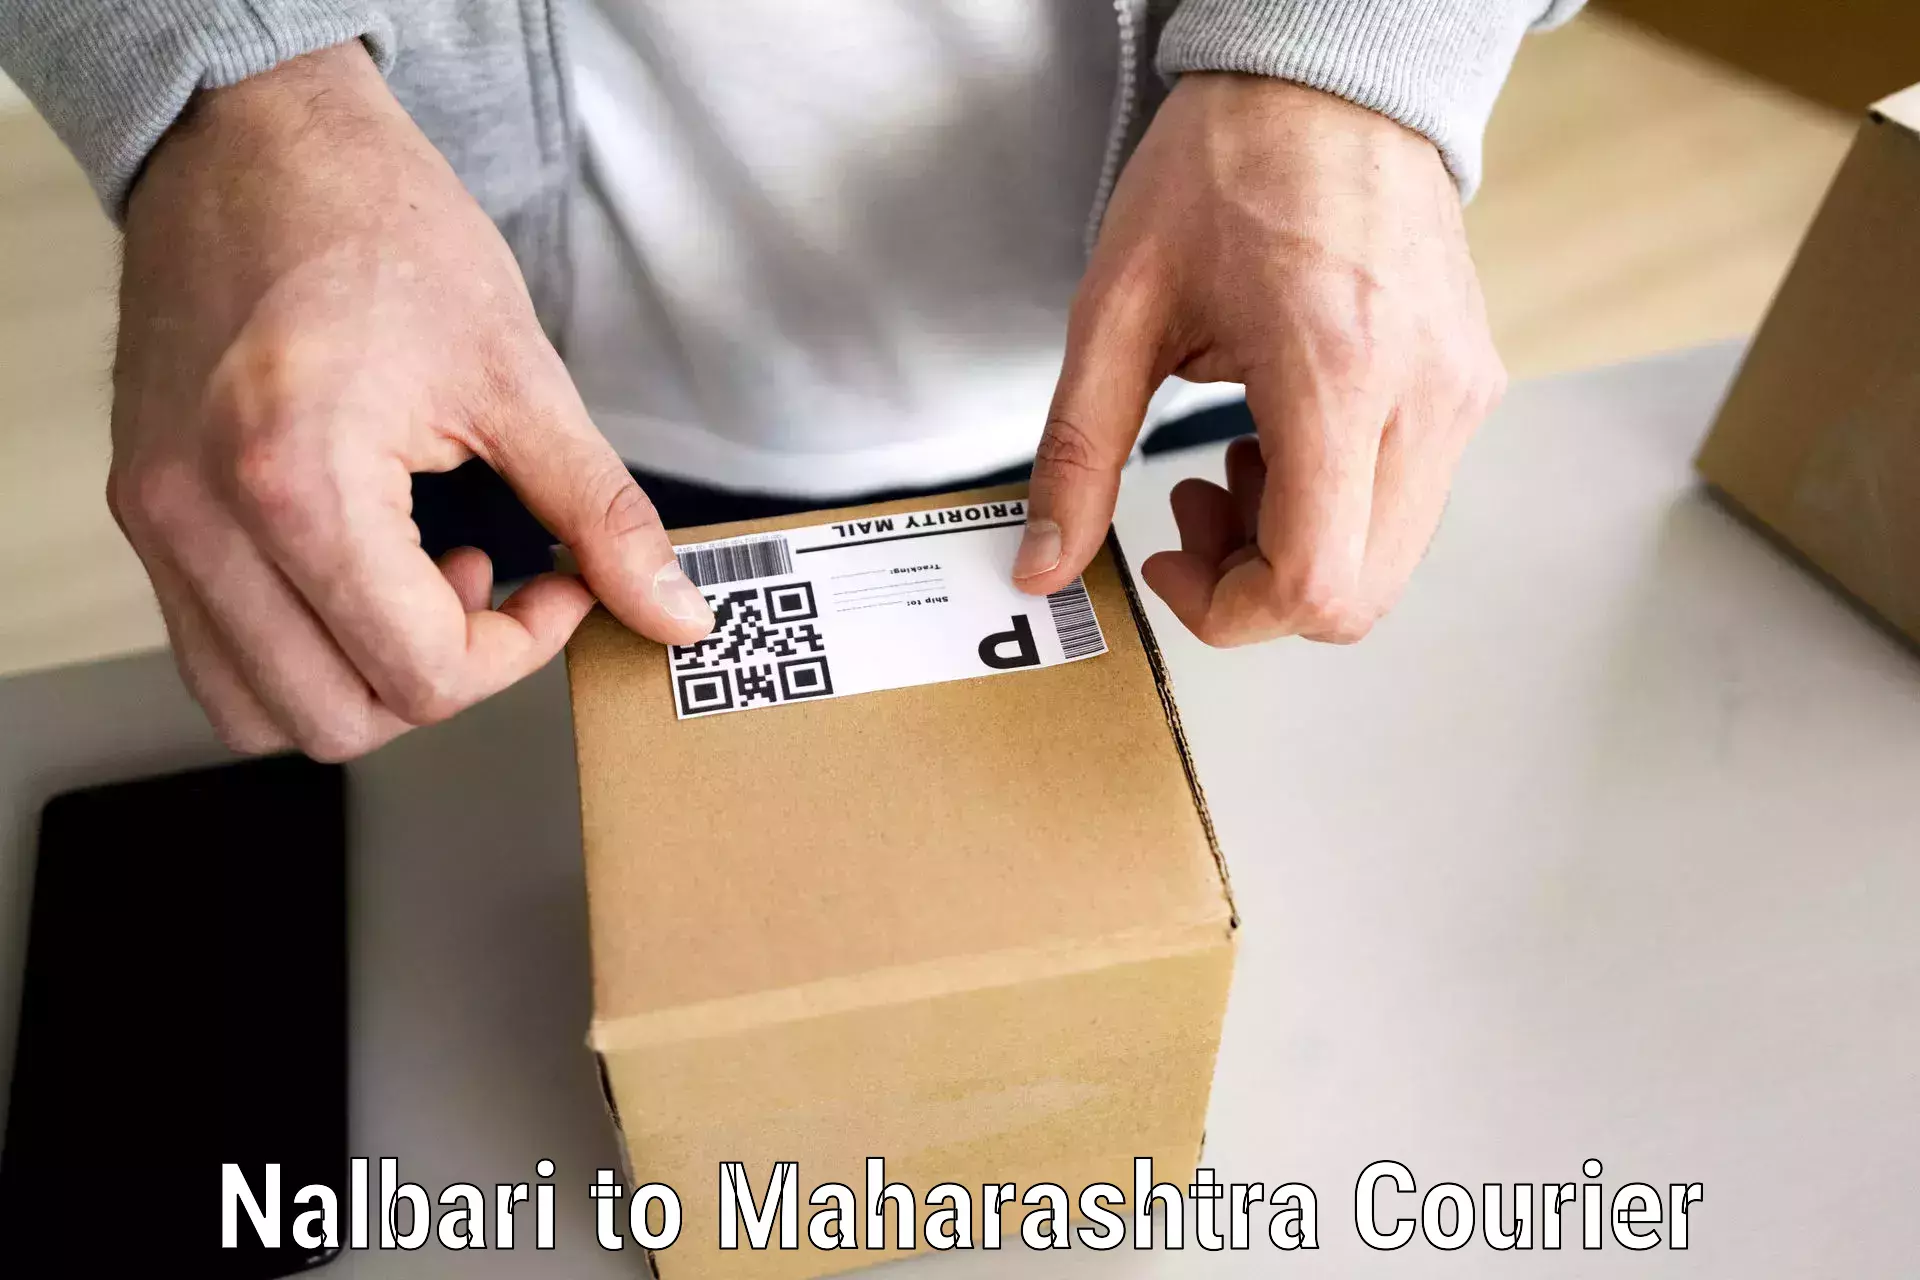 Furniture movers and packers Nalbari to Maharashtra